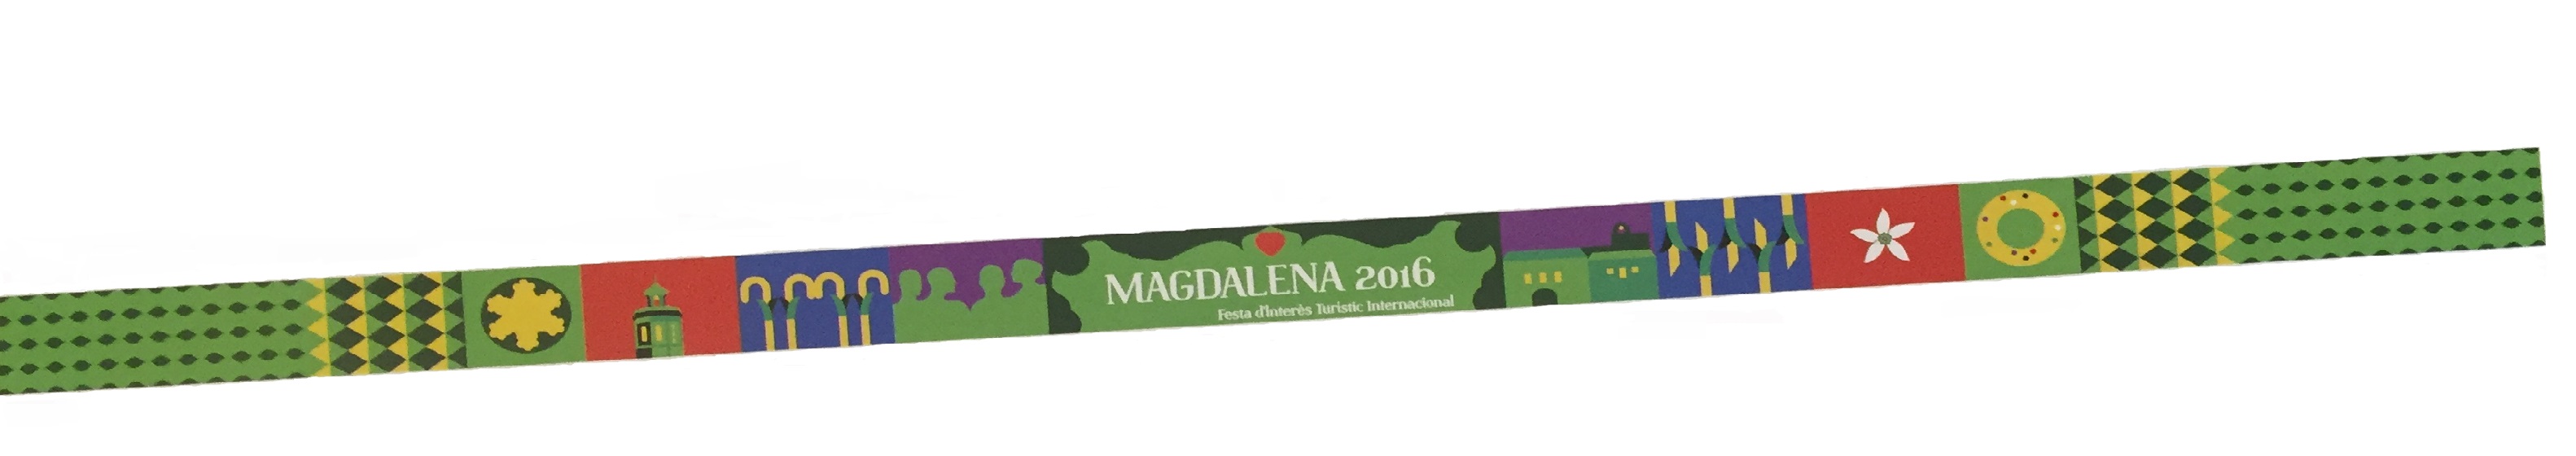 pulsera magdalena 2016(1).jpg